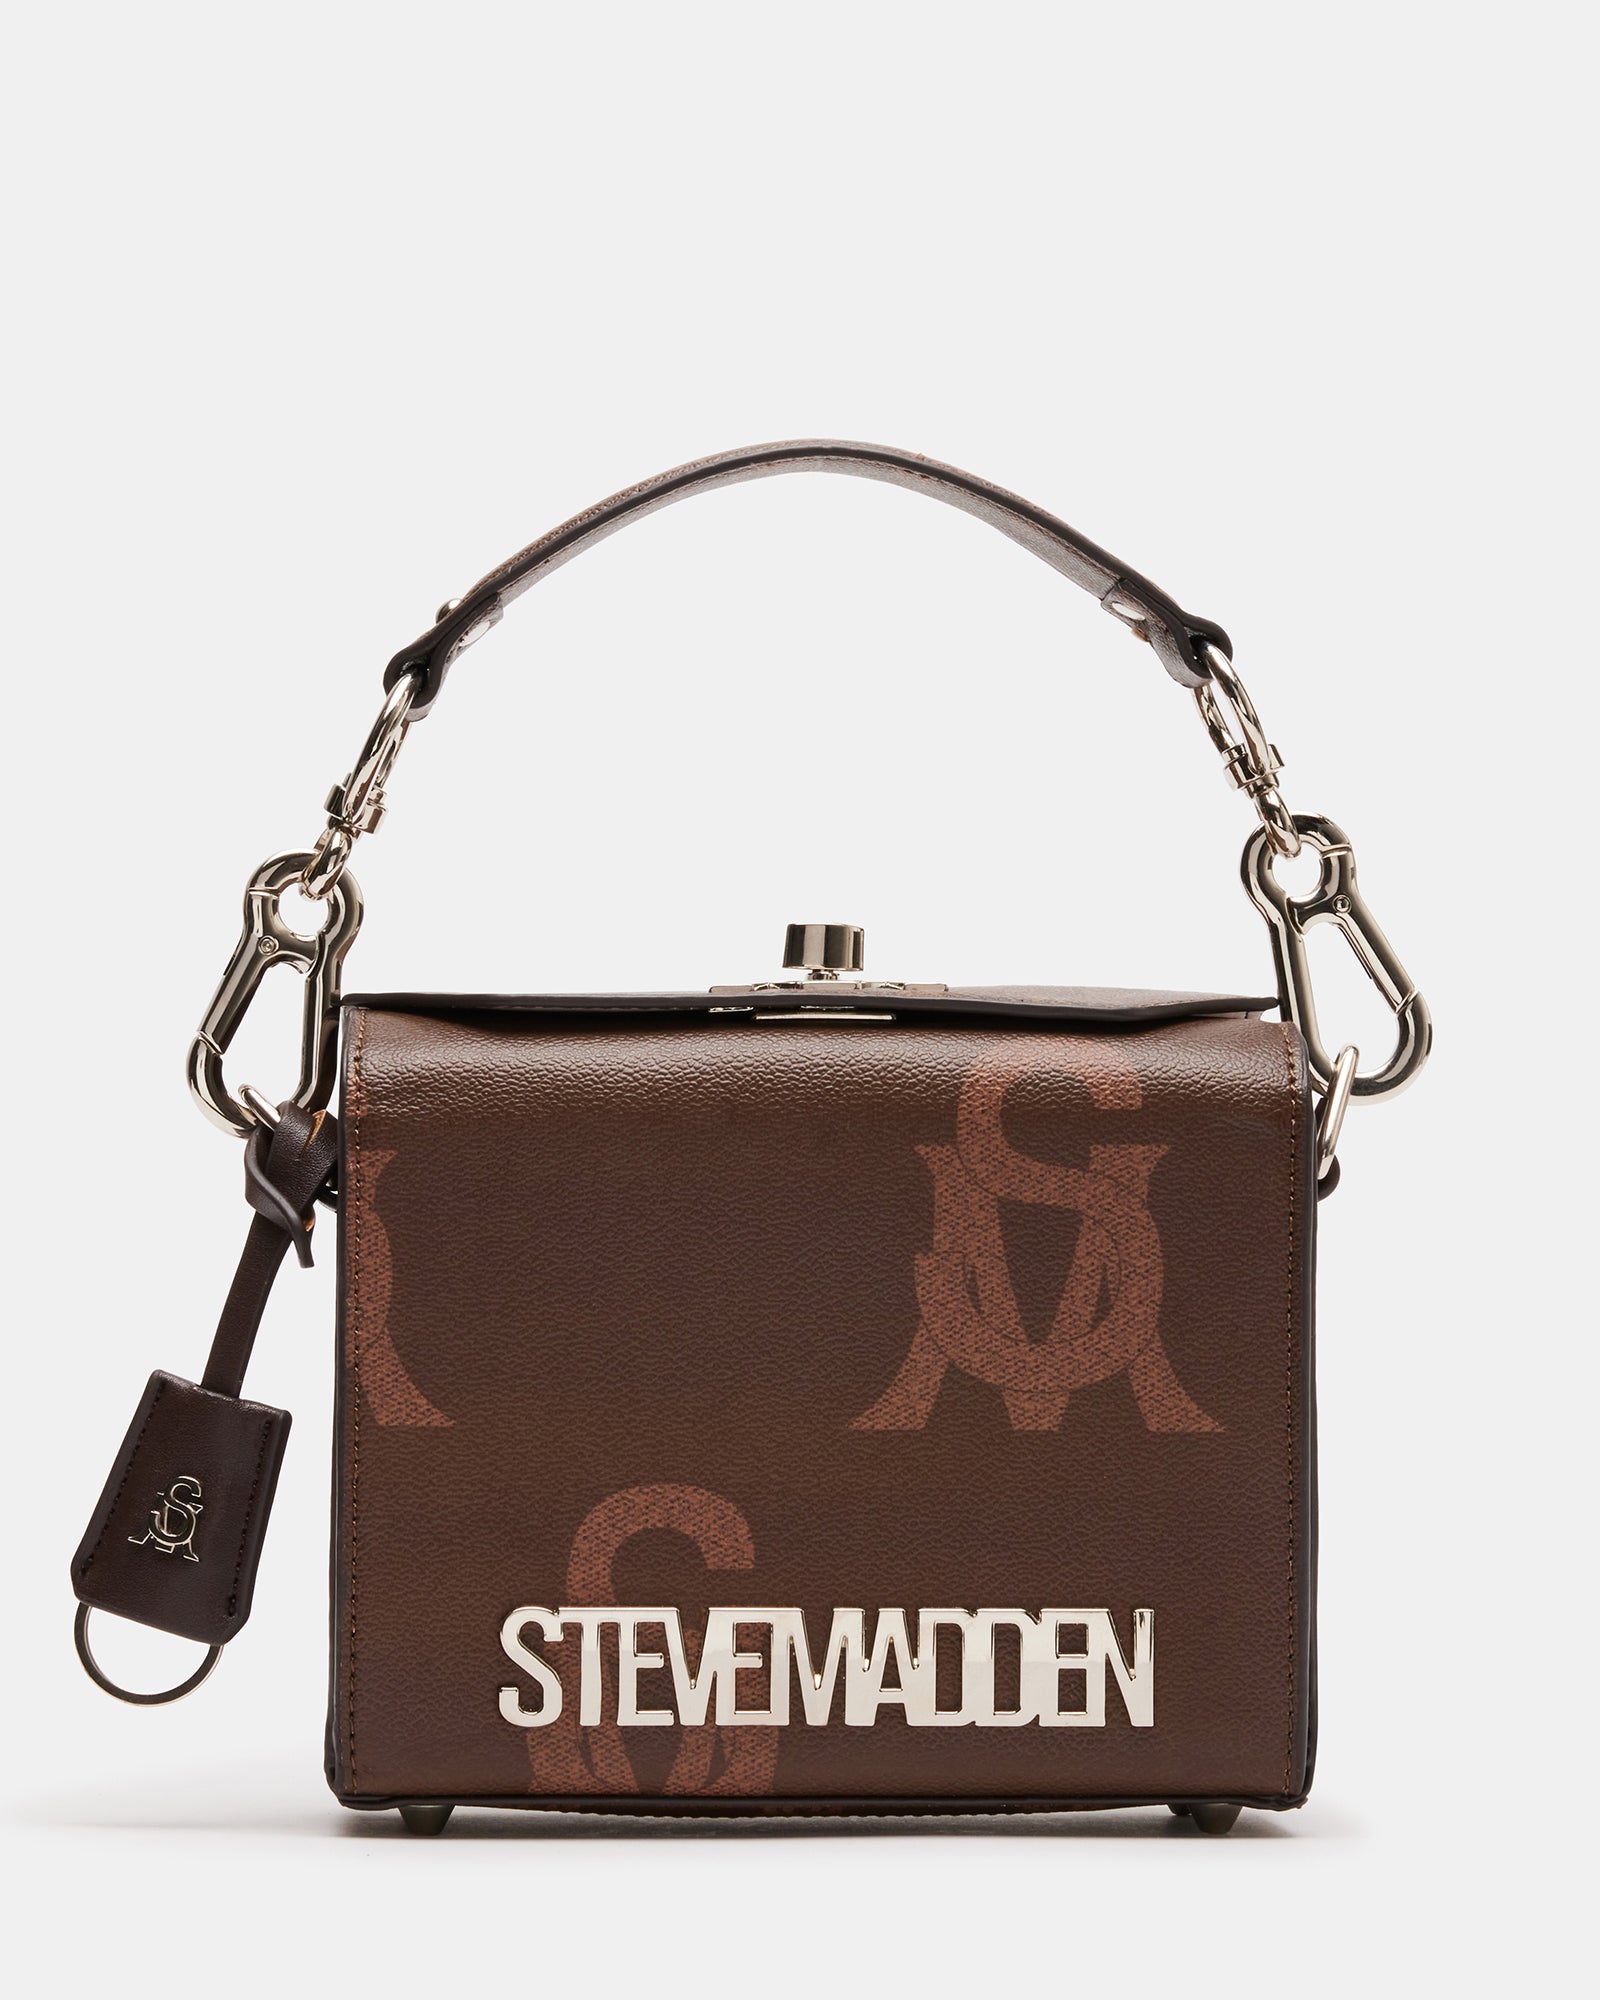 SCENE BAG CLEAR  Steve madden handbags, Designer crossbody bags, Cross  body handbags